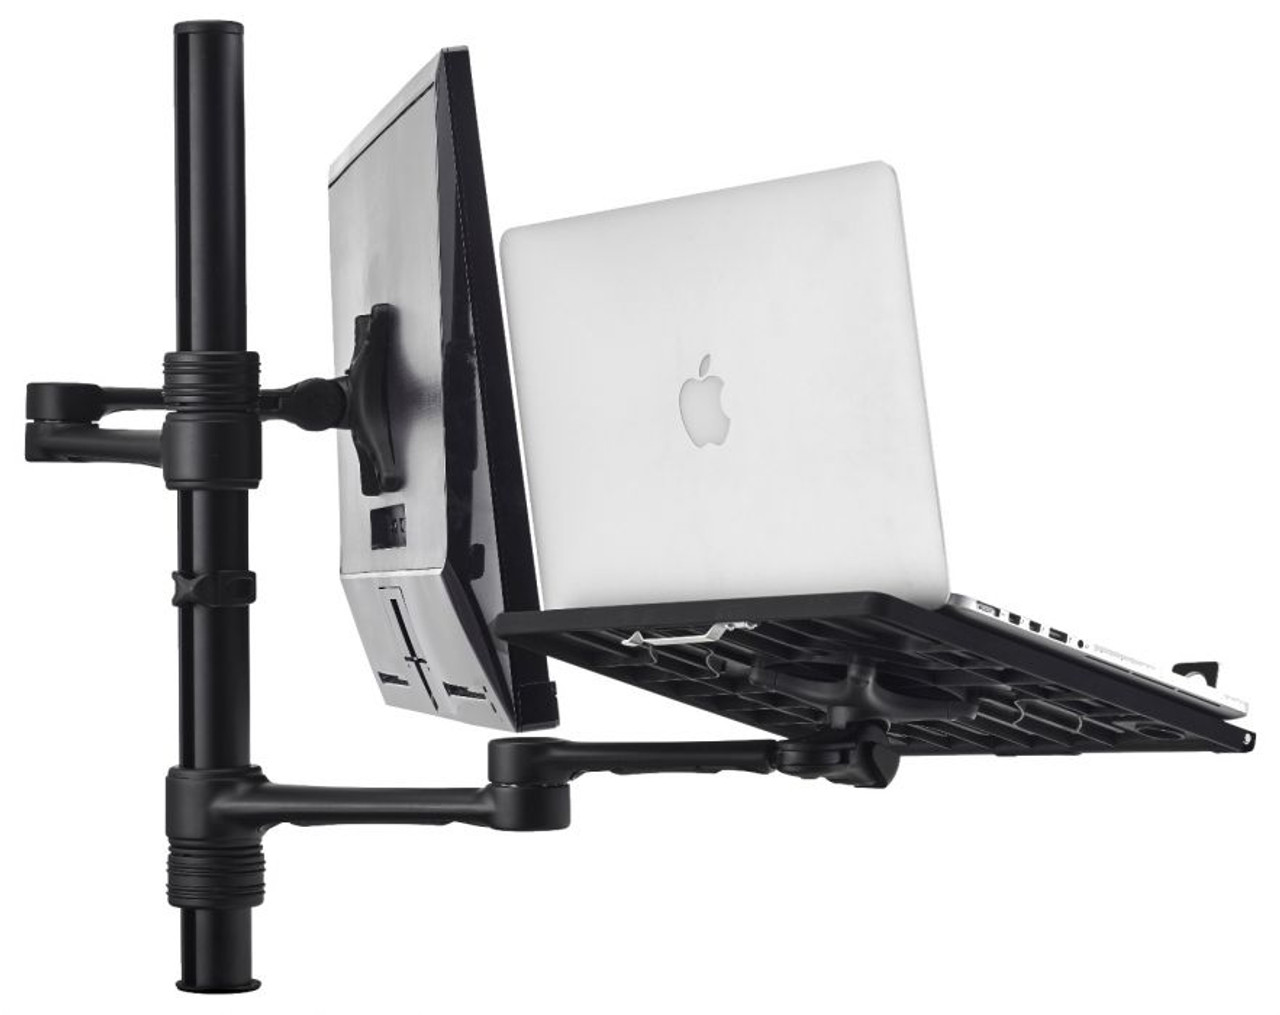 Atdec AFS-AT-NBC Dual Notebook / Monitor Arm Combo Desk Mount (8kg Max)